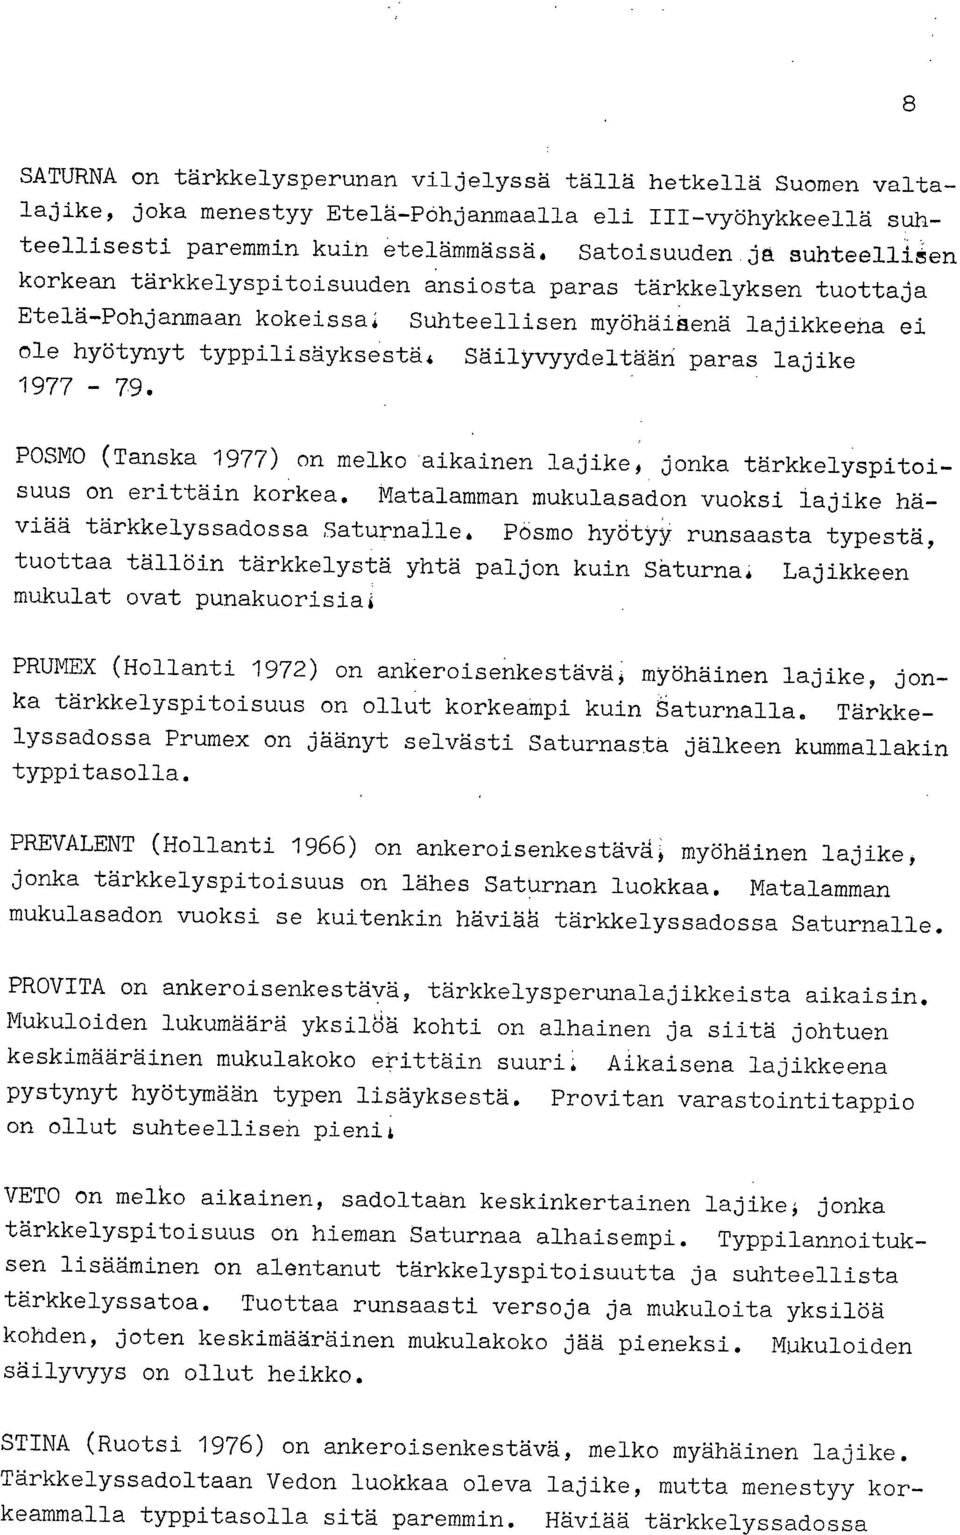 Säilyvyydeltään paras lajike 1977-79. POSMO (Tanska 1977) on melko 'aikainen lajike, jonka tärkkelyspitoisuus on erittäin korkea.